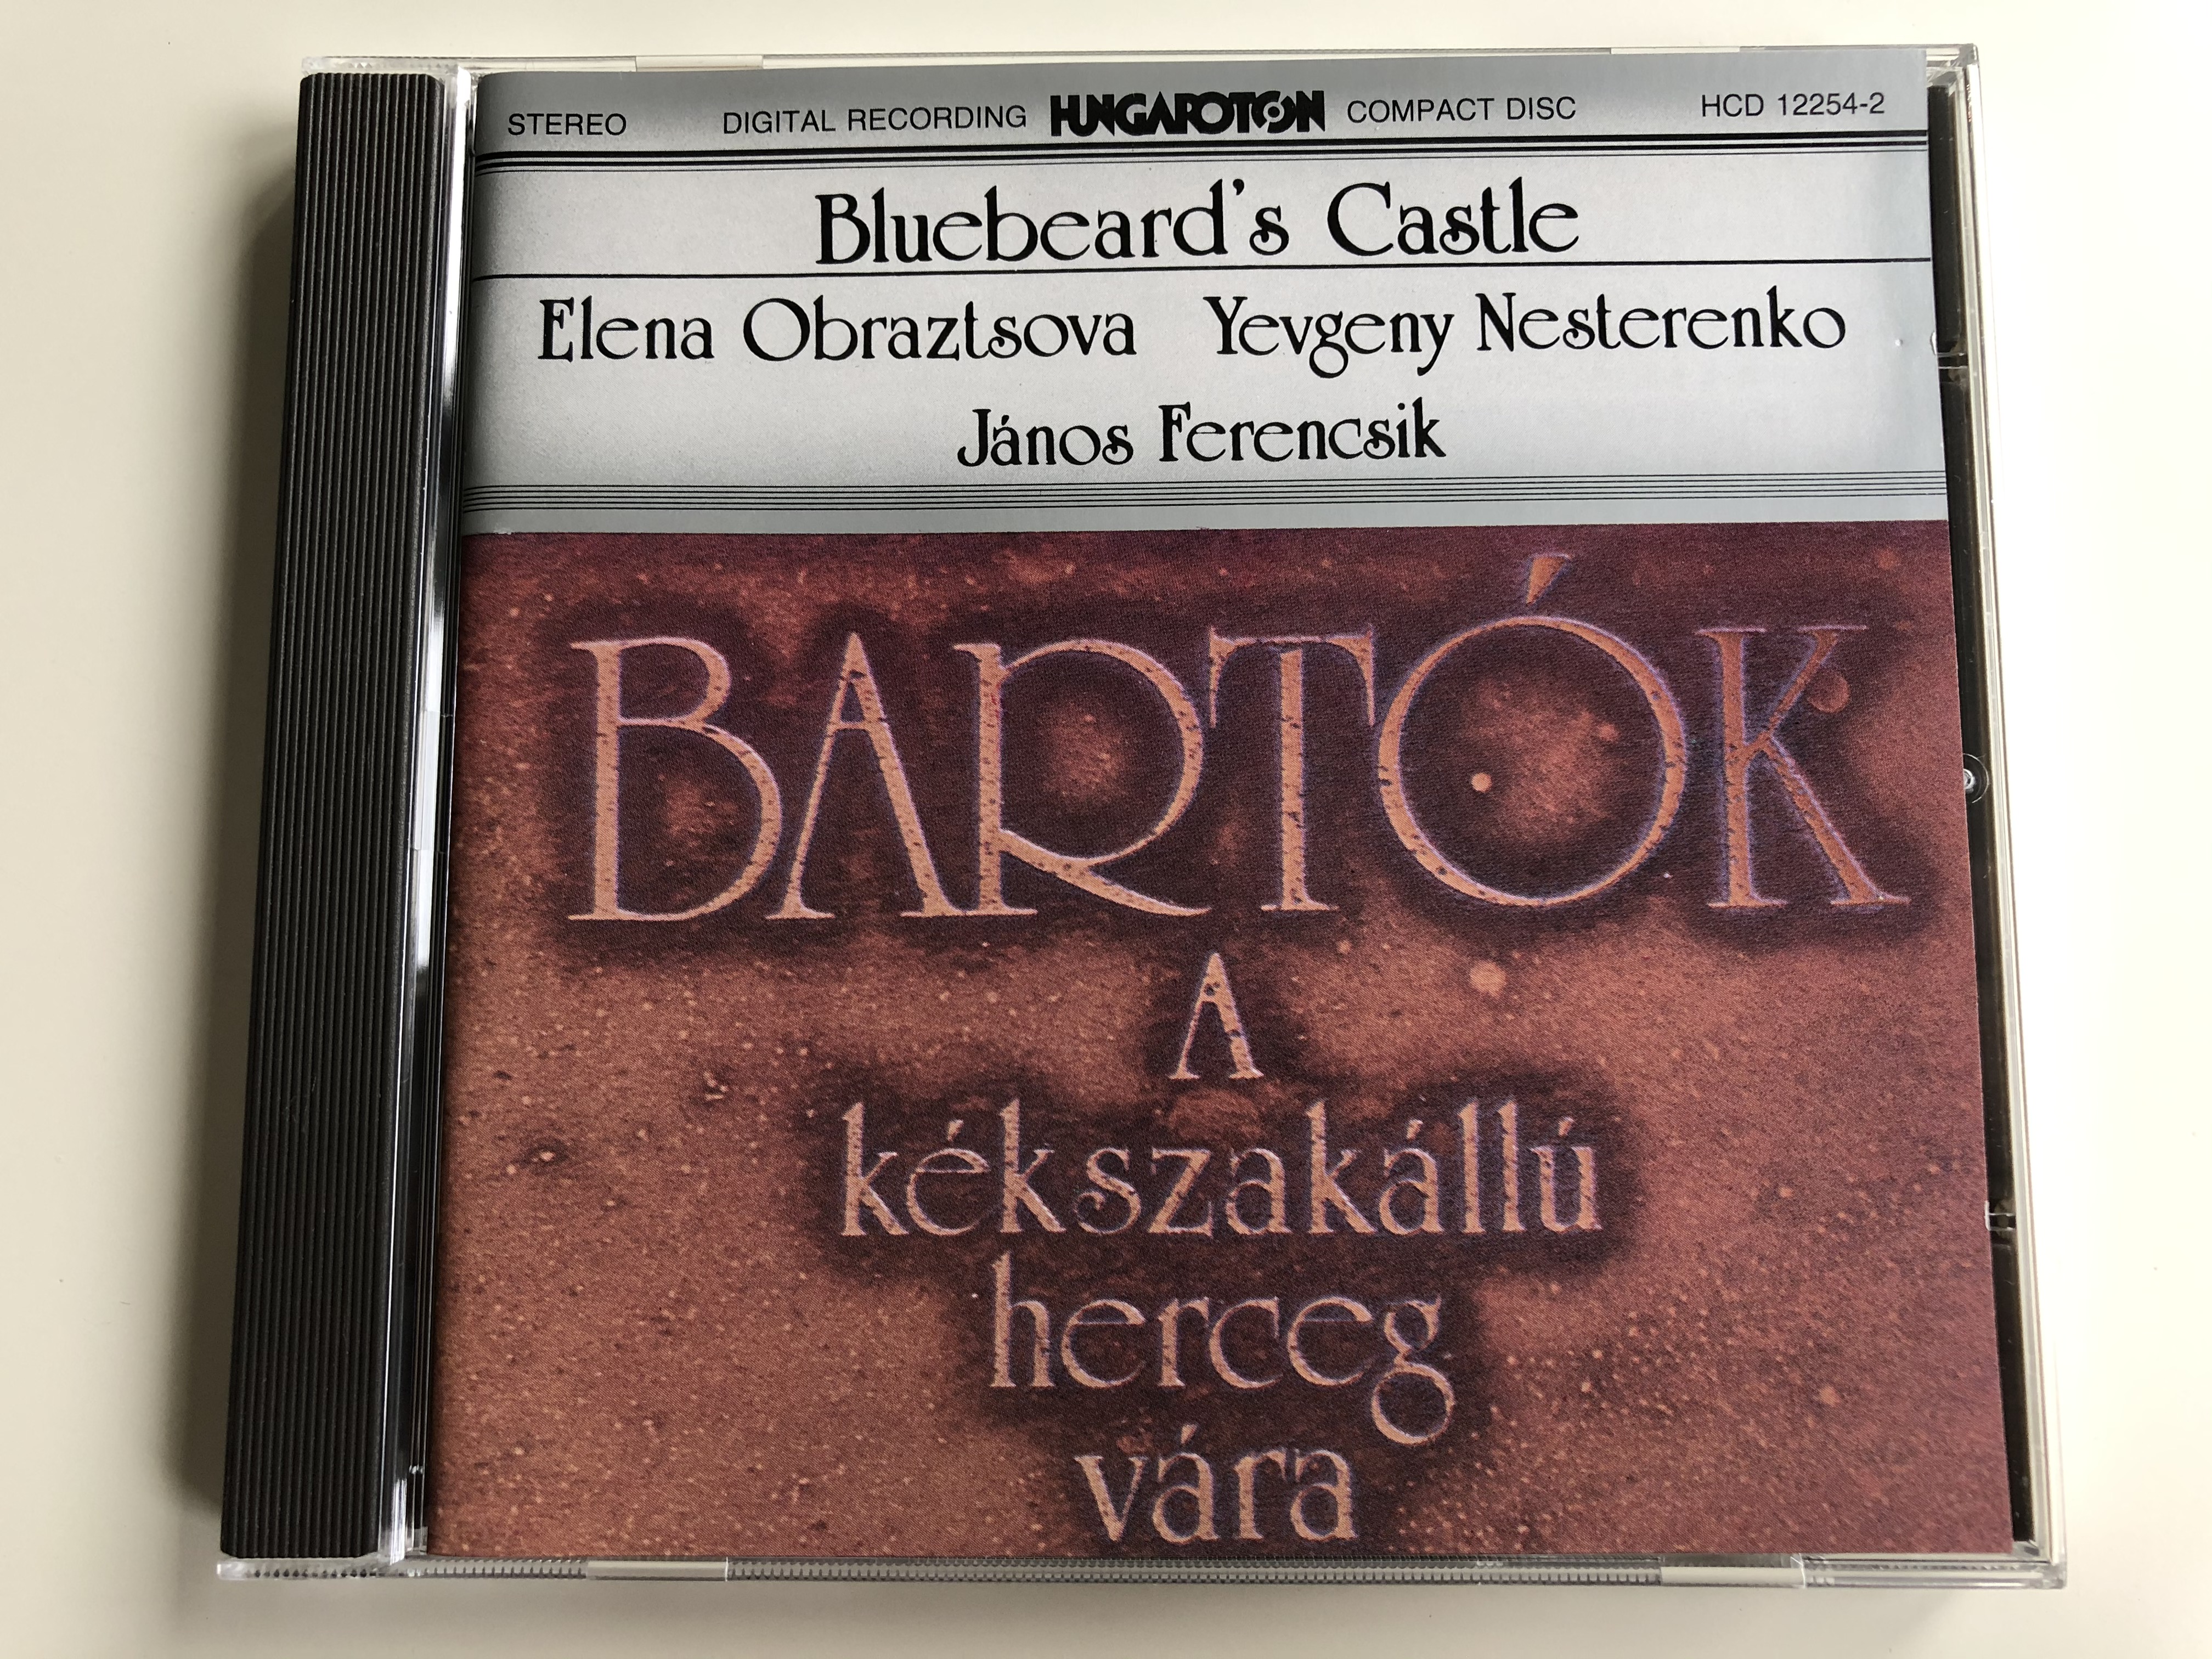 bluebeard-s-castle-elena-obraztsova-yevgeny-nesterenko-janos-ferencsik-bartok-a-k-kszak-ll-herceg-v-ra-hungaroton-audio-cd-1981-stereo-hcd-12254-2-1-.jpg